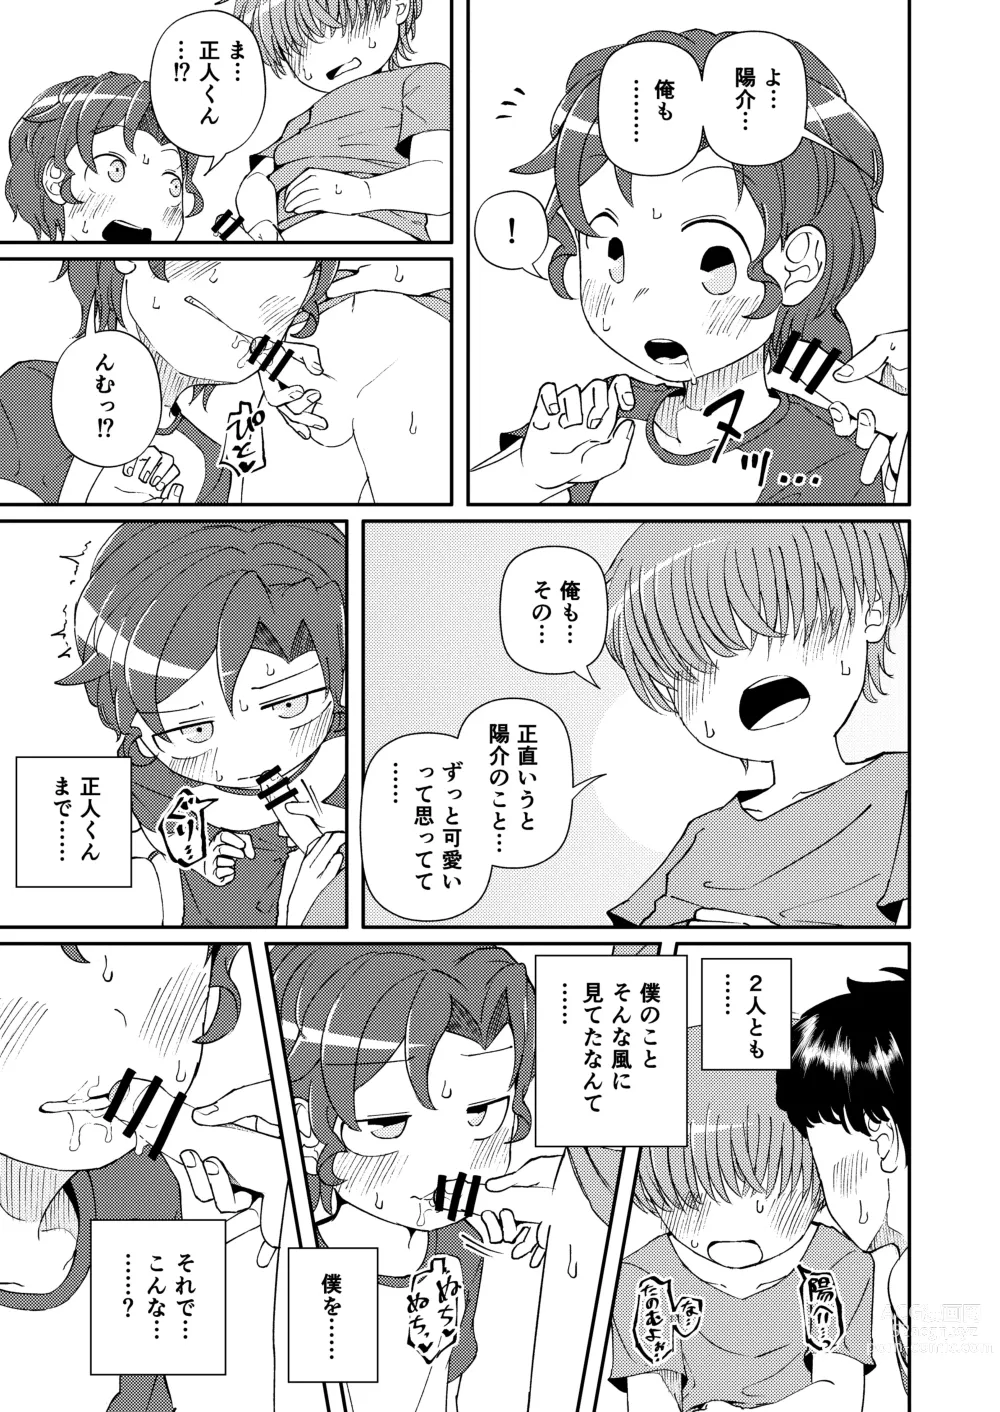 Page 17 of doujinshi Shoujiki Iu to,